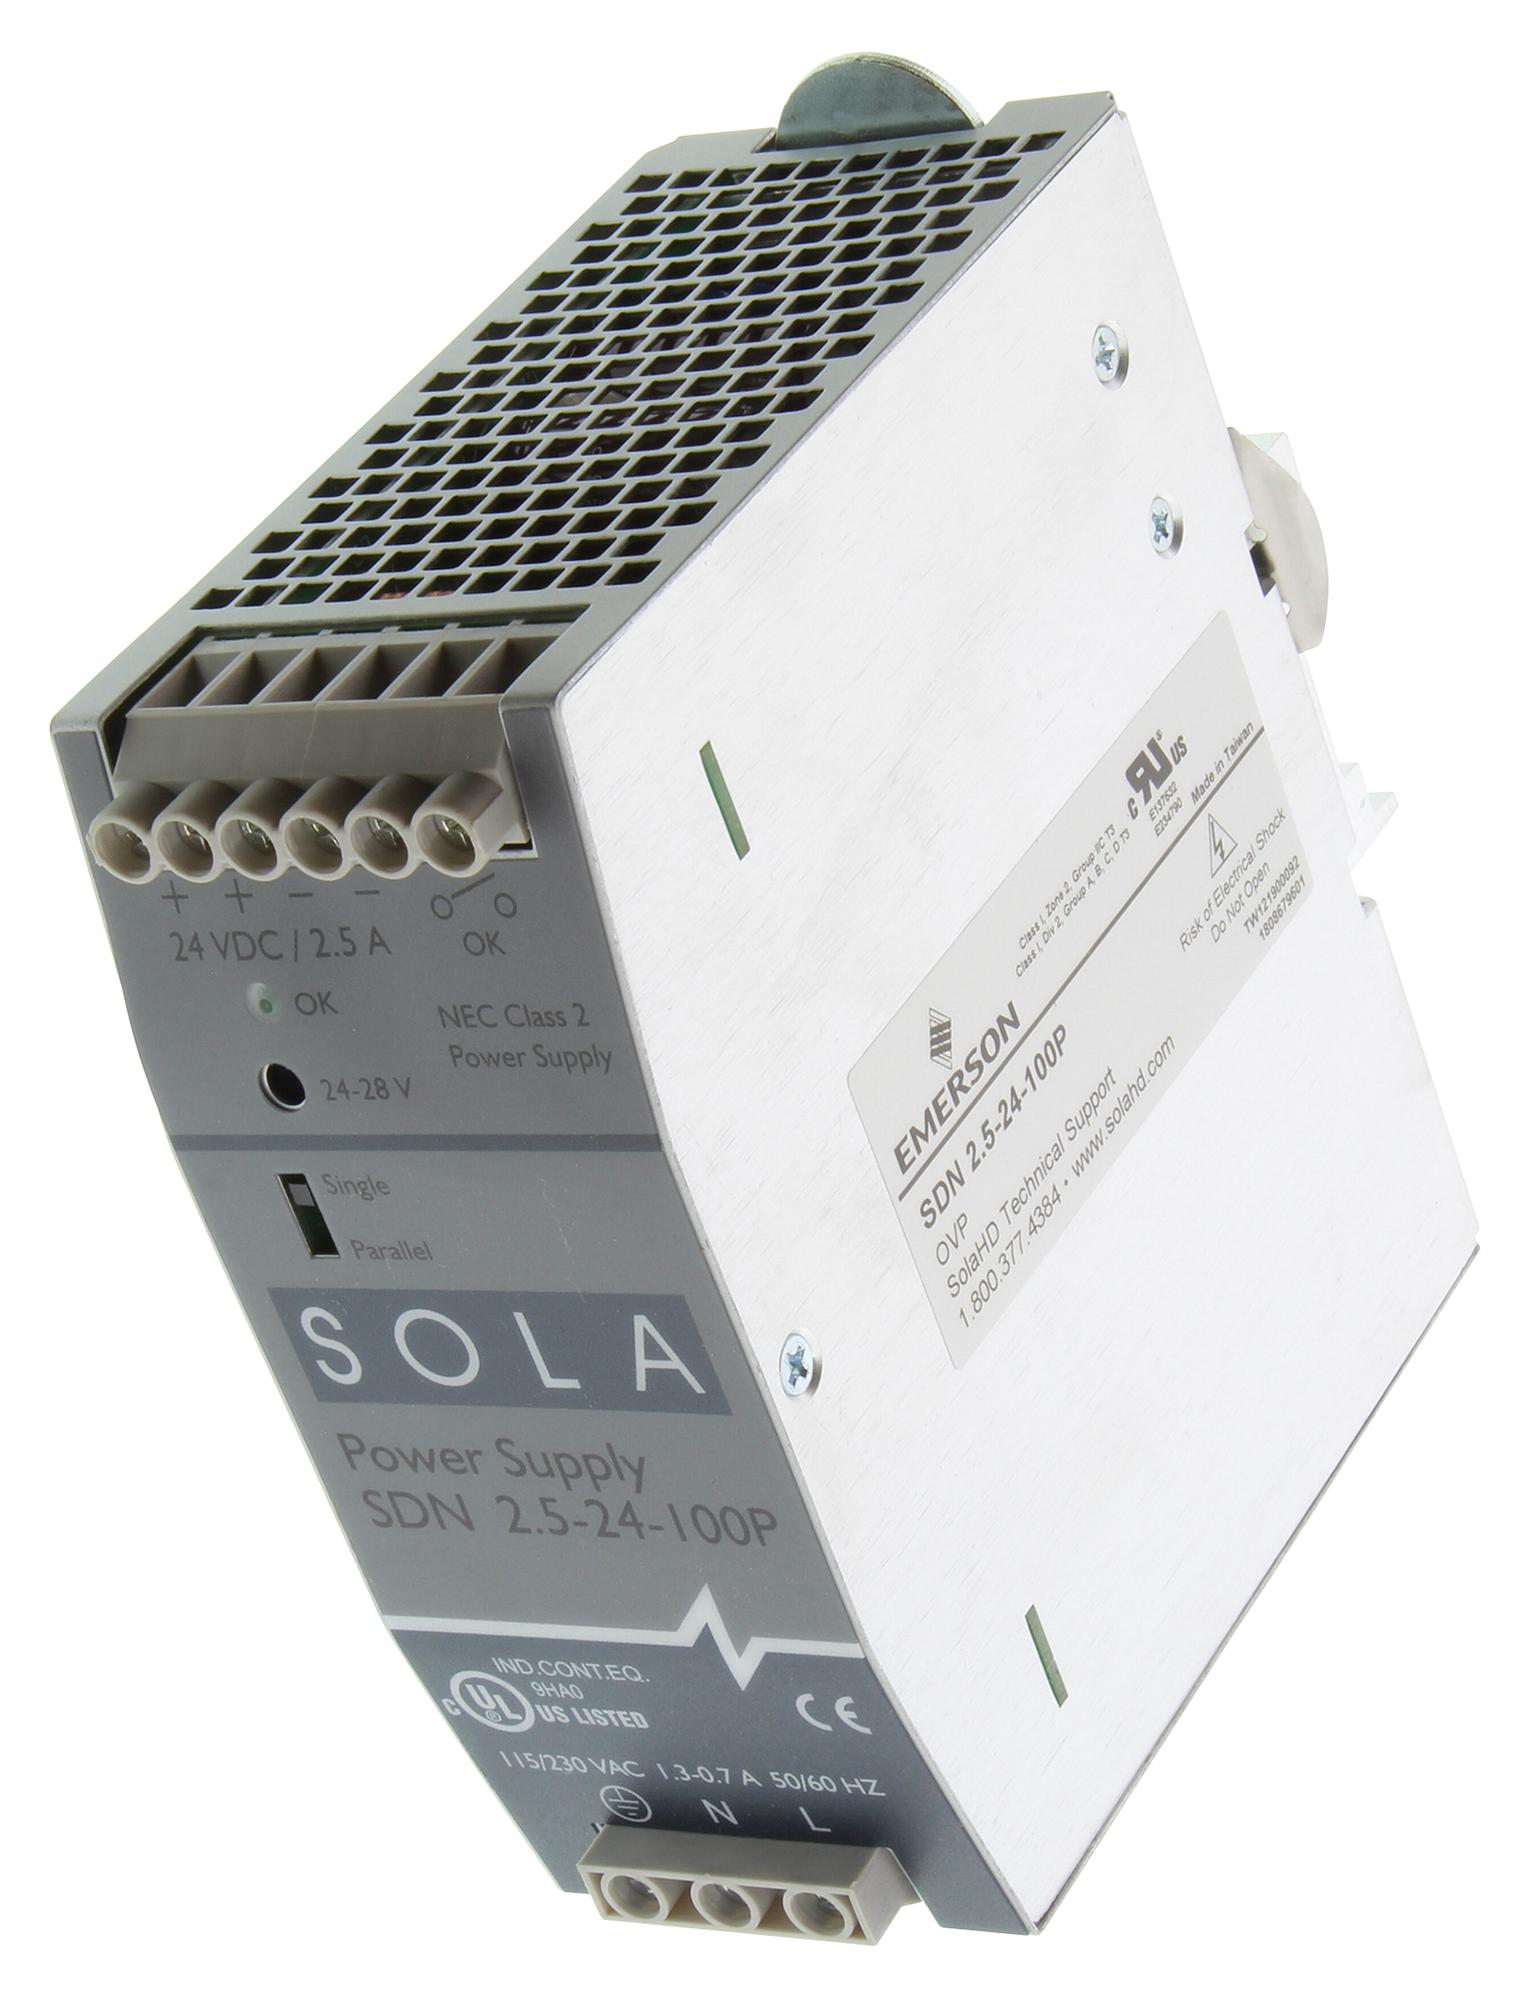 SolaHD Sdn2.5-24-100P Ac-Dc Converter, Din Rail, 1 O/p, 60W, 2.5A, 24V